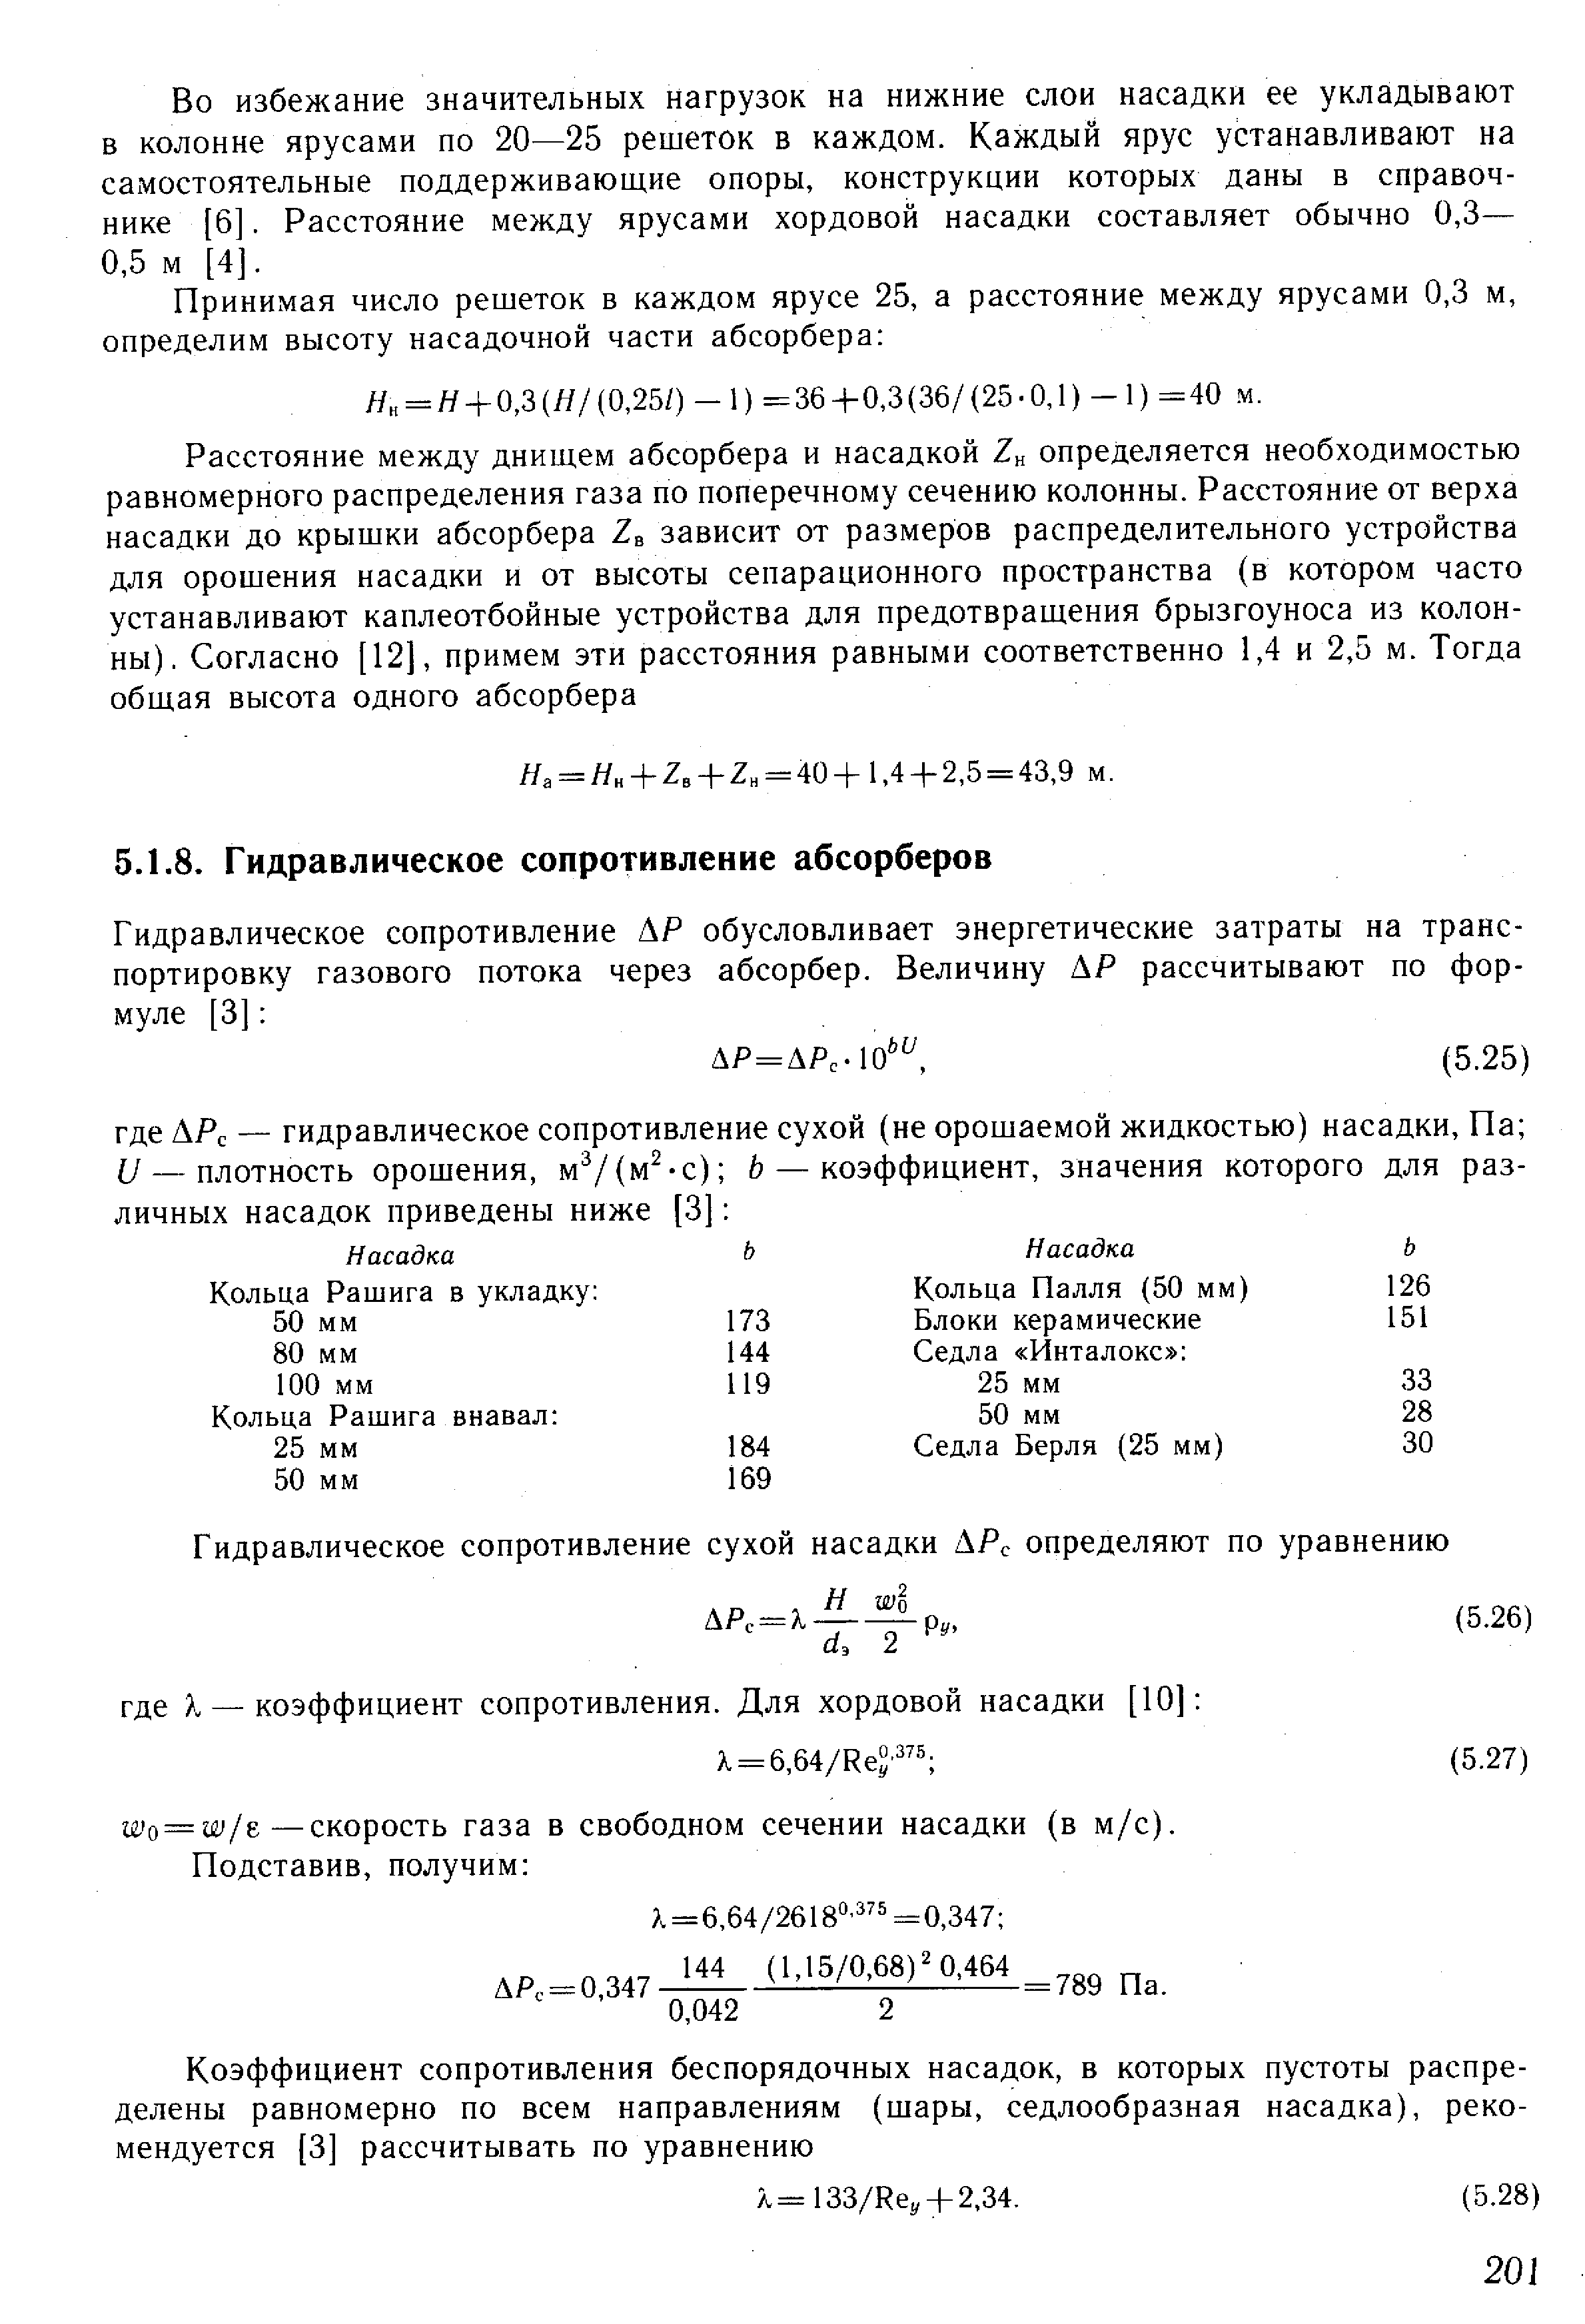 Шо = 11У/е—скорость газа в свободном сечении насадки (в м/с).